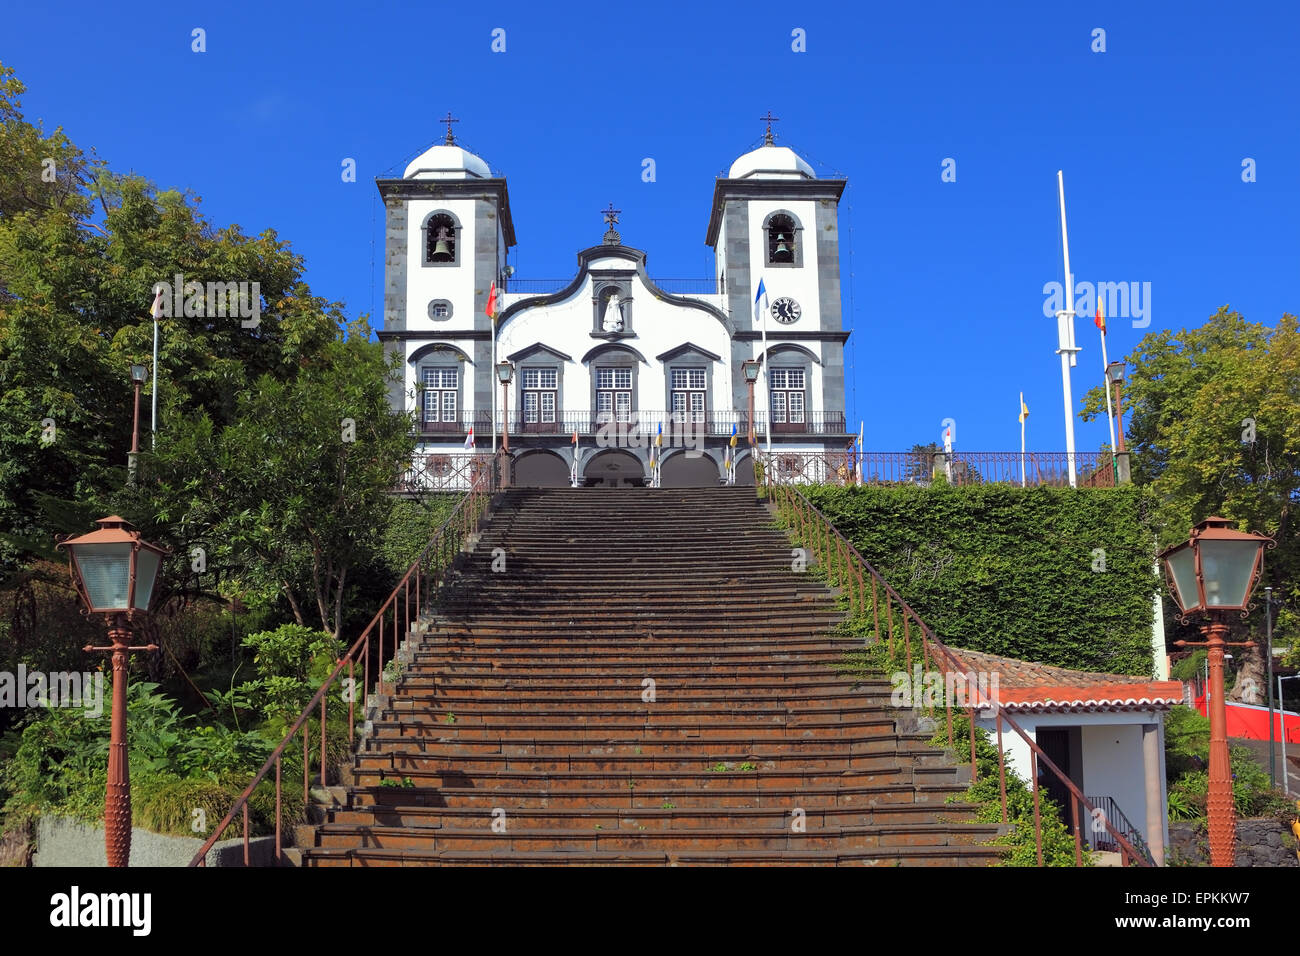 Attrazioni turistiche dell'isola portoghese Foto Stock